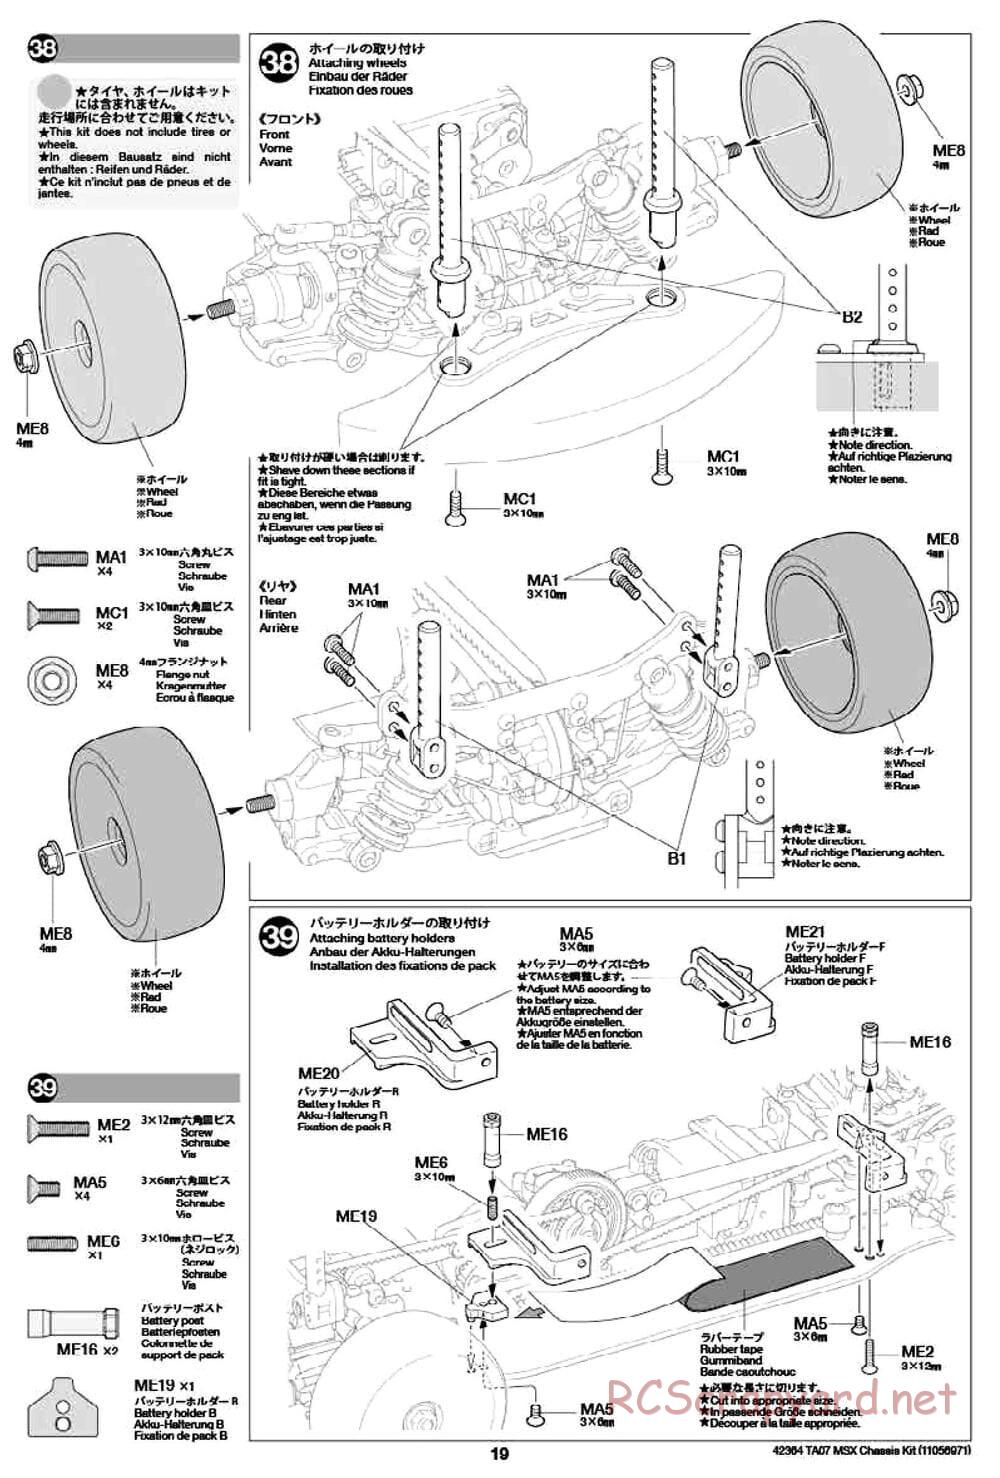 Tamiya - TA07 MSX Chassis - Manual - Page 19